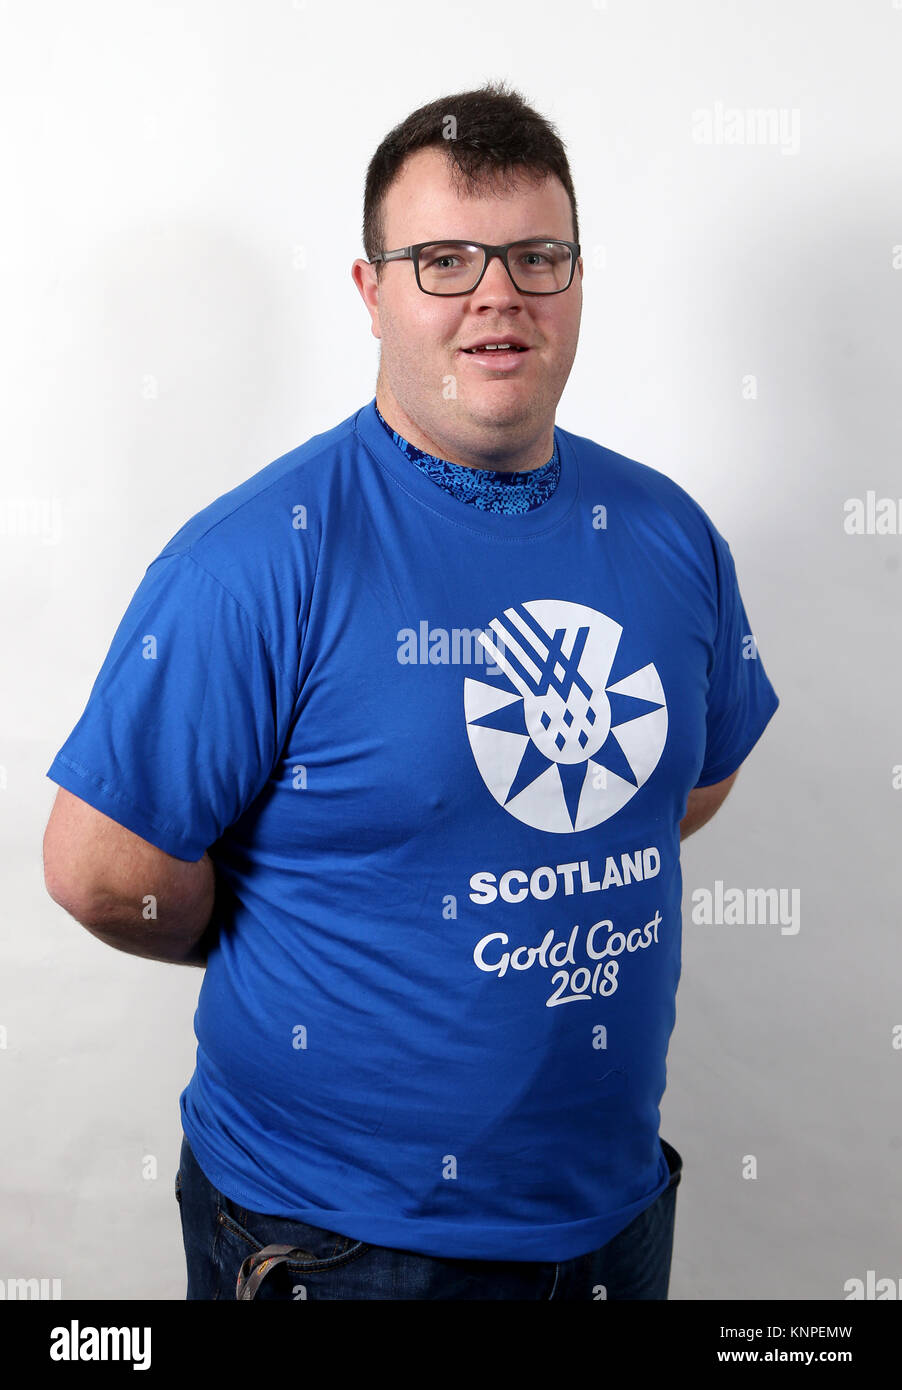 Chris Bennett während der Team Schottland Leichtathleten Ankündigung für den Gold Coast 2018 Commonwealth Games an der Universität Stirling. Stockfoto